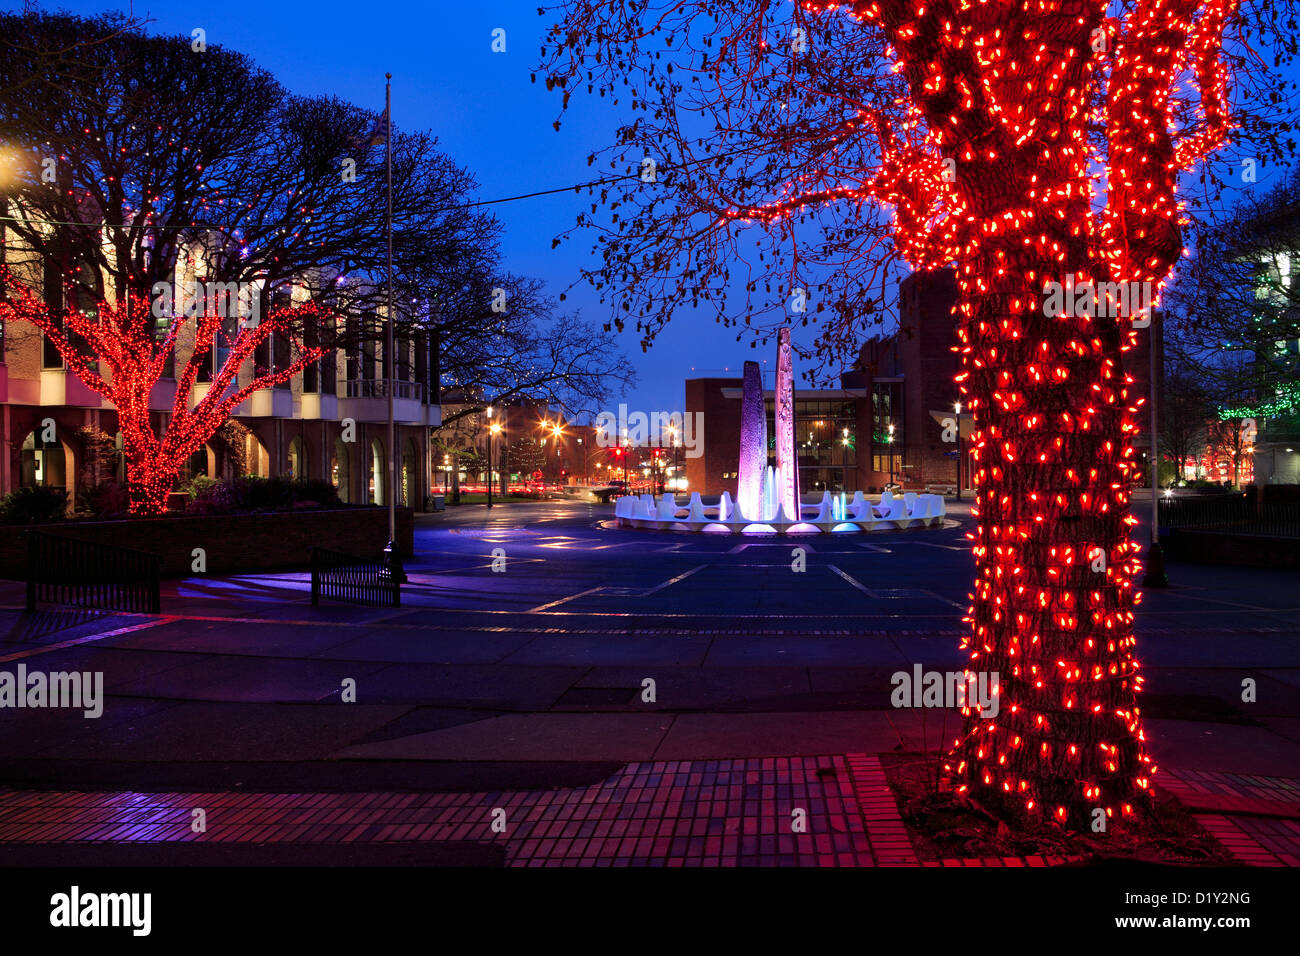 Centennial Square beleuchtet für Weihnachten Jahreszeit.-Victoria, British Columbia, Kanada. Stockfoto